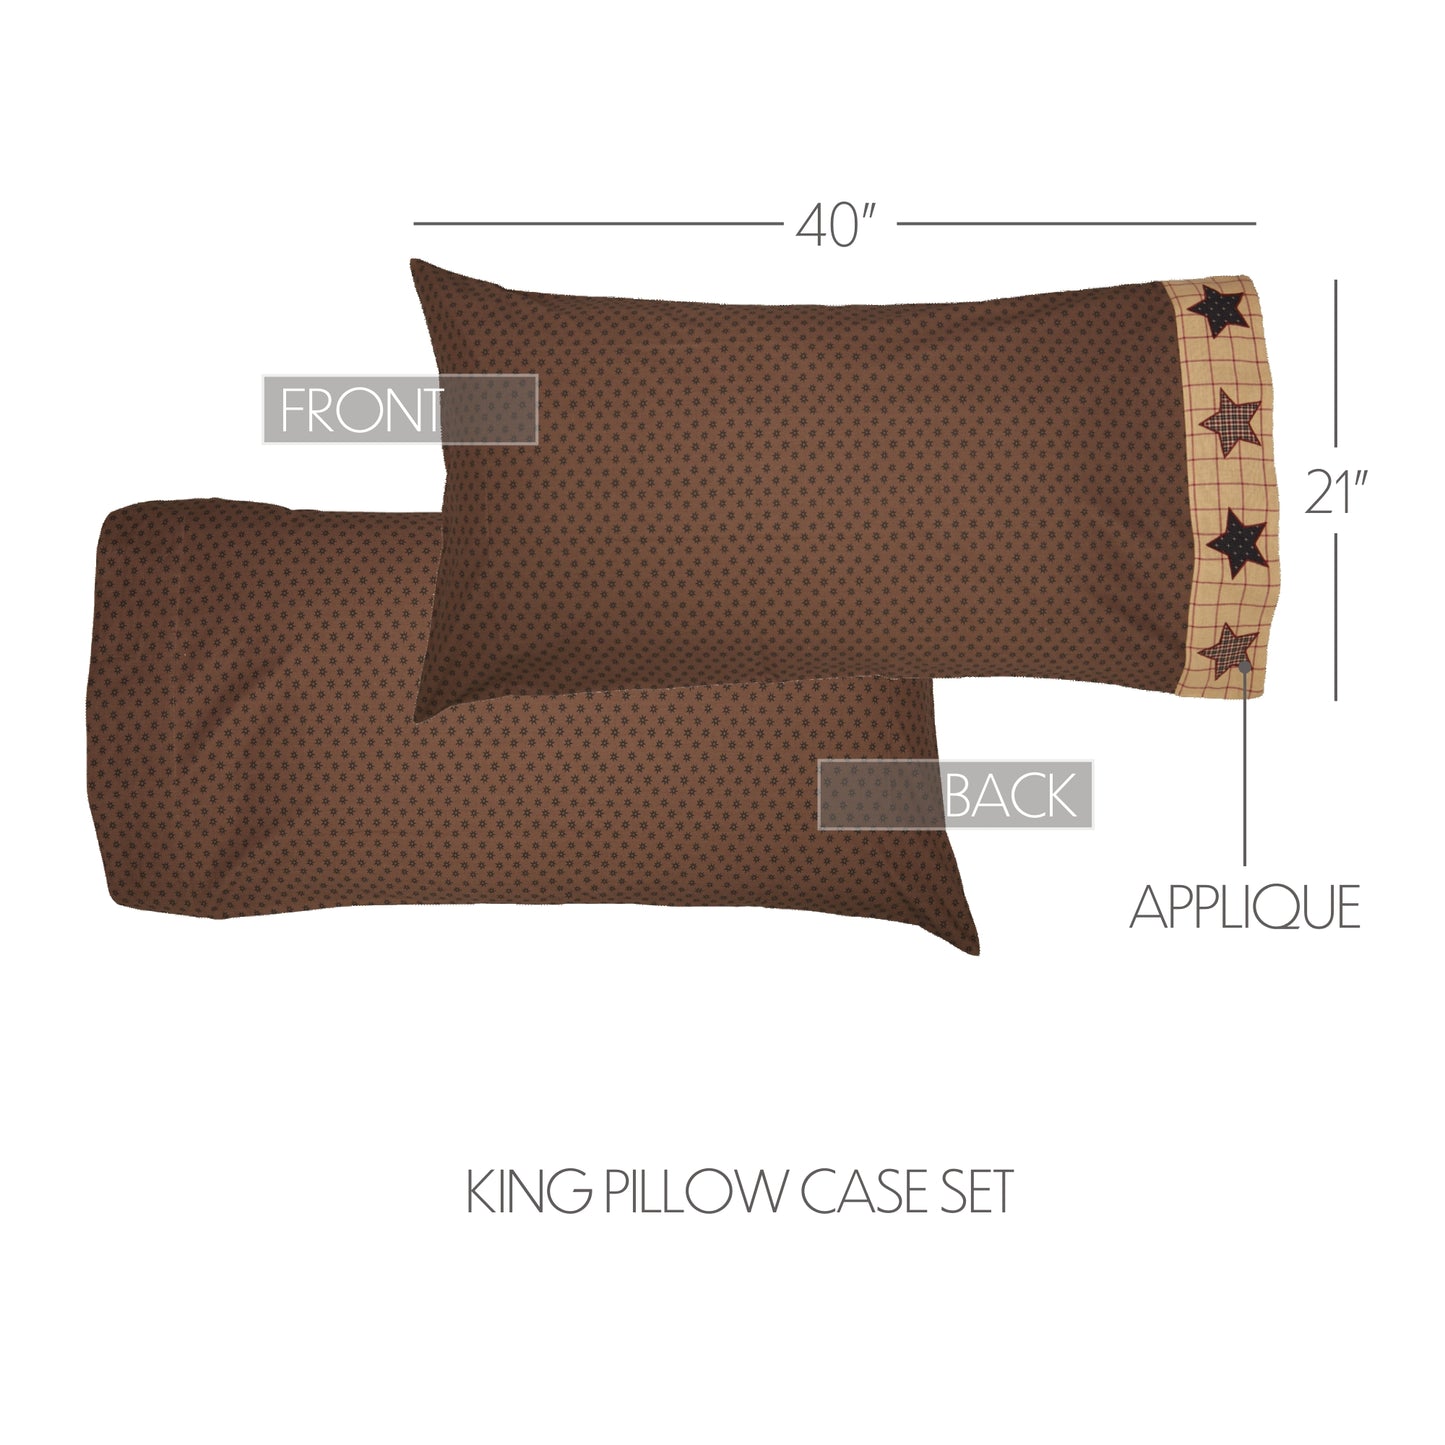 56645-Bingham-Star-King-Pillow-Case-Set-of-2-21x40-image-1